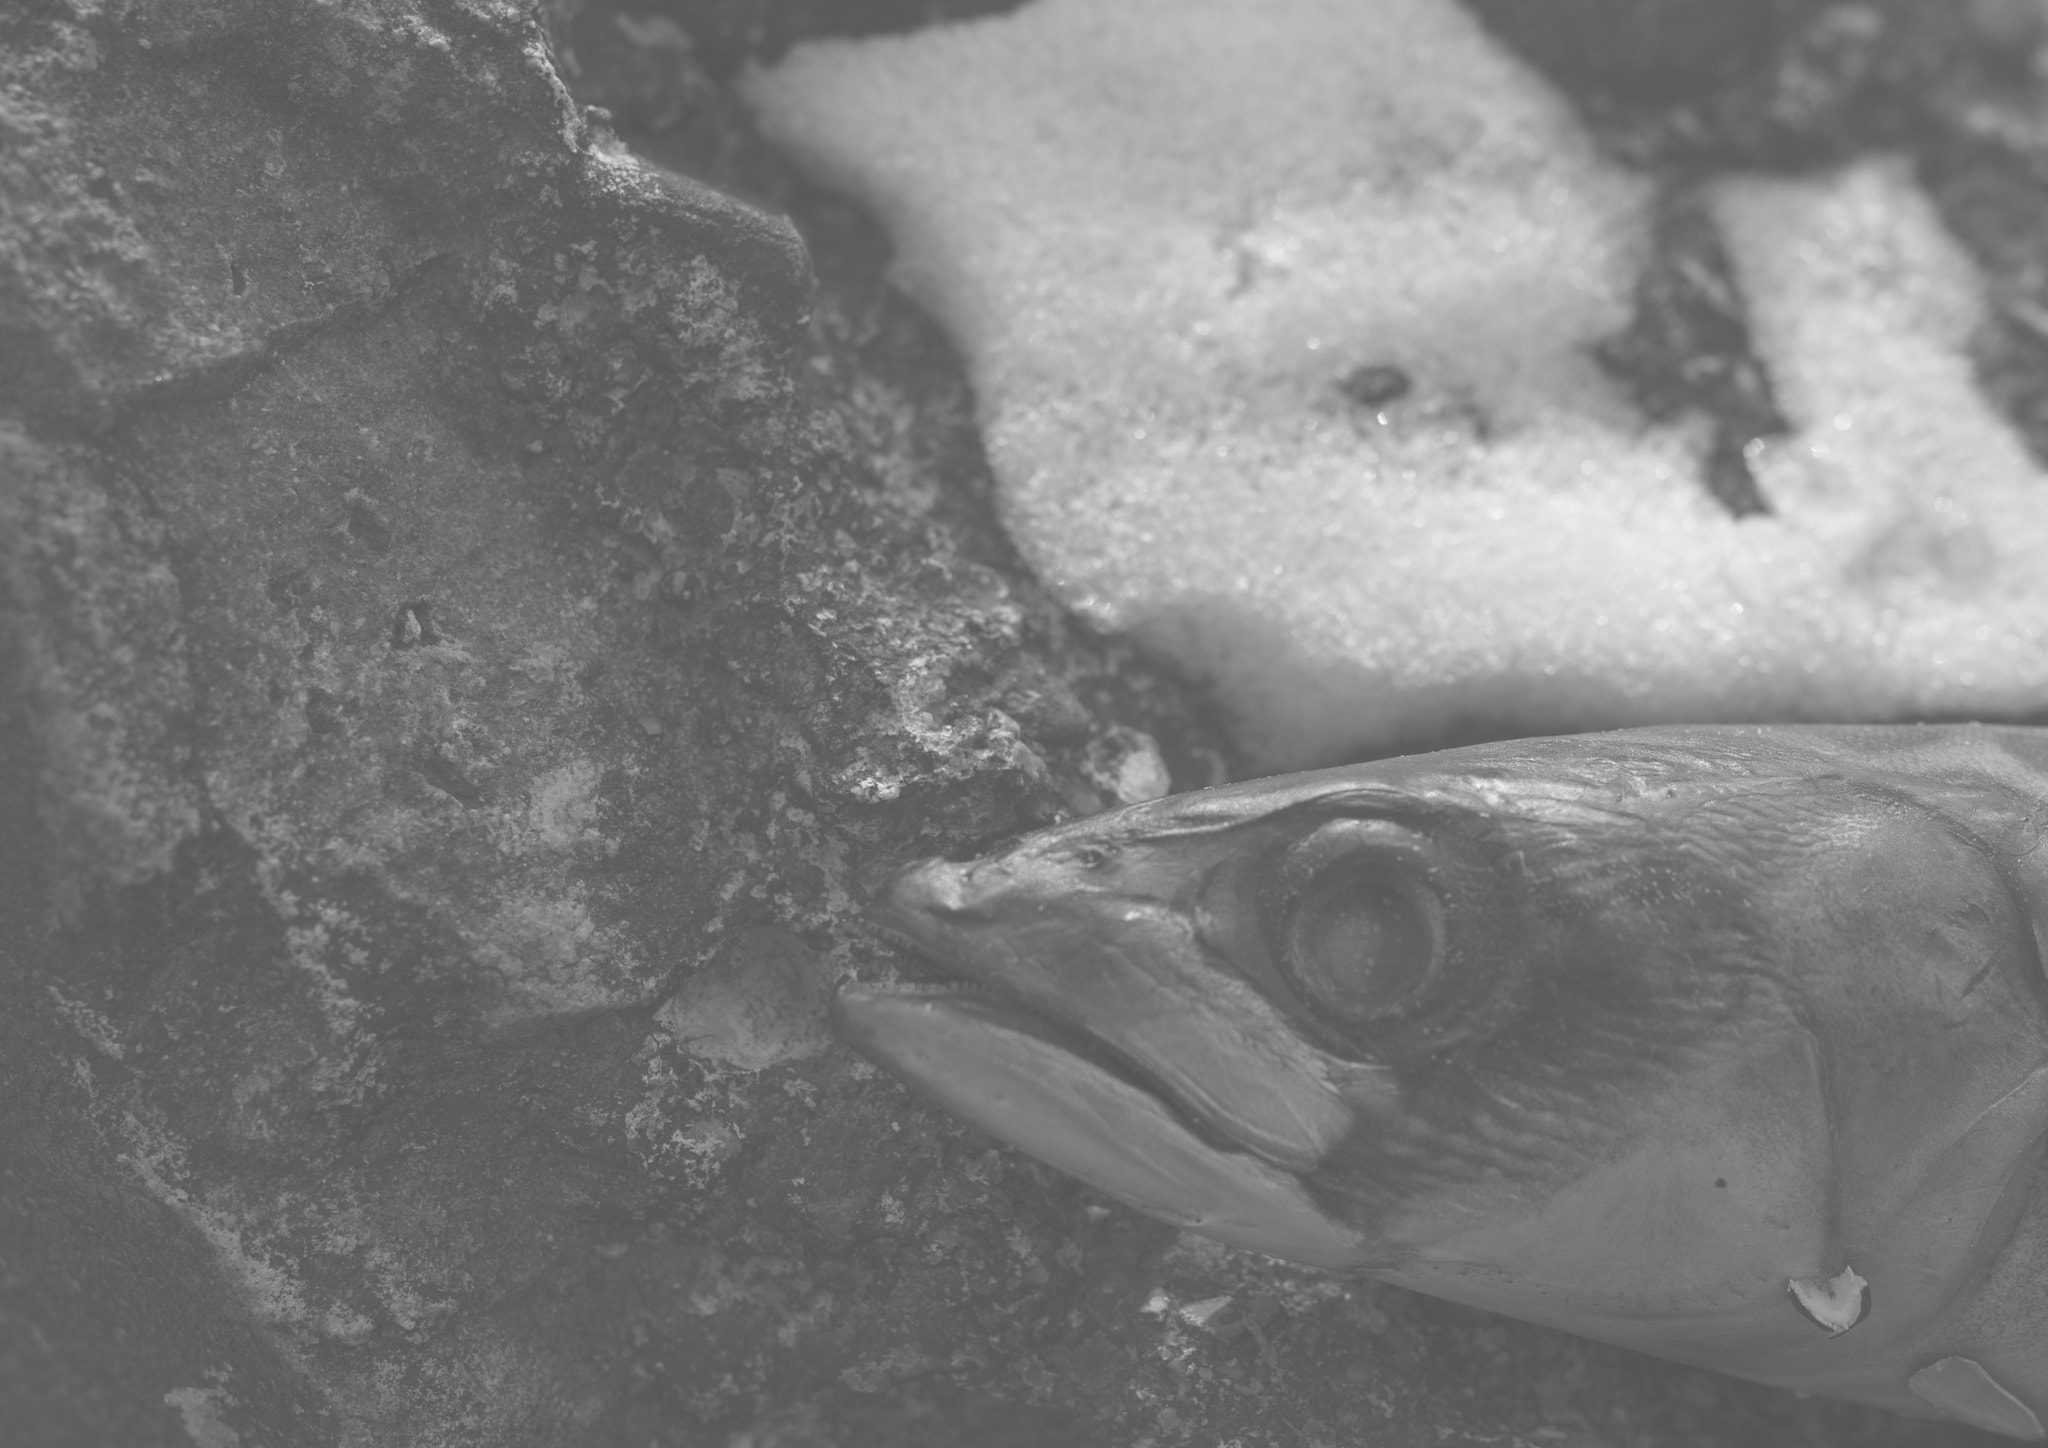 Samyang 35mm F1.4 AS UMC sample photo. Fish photography